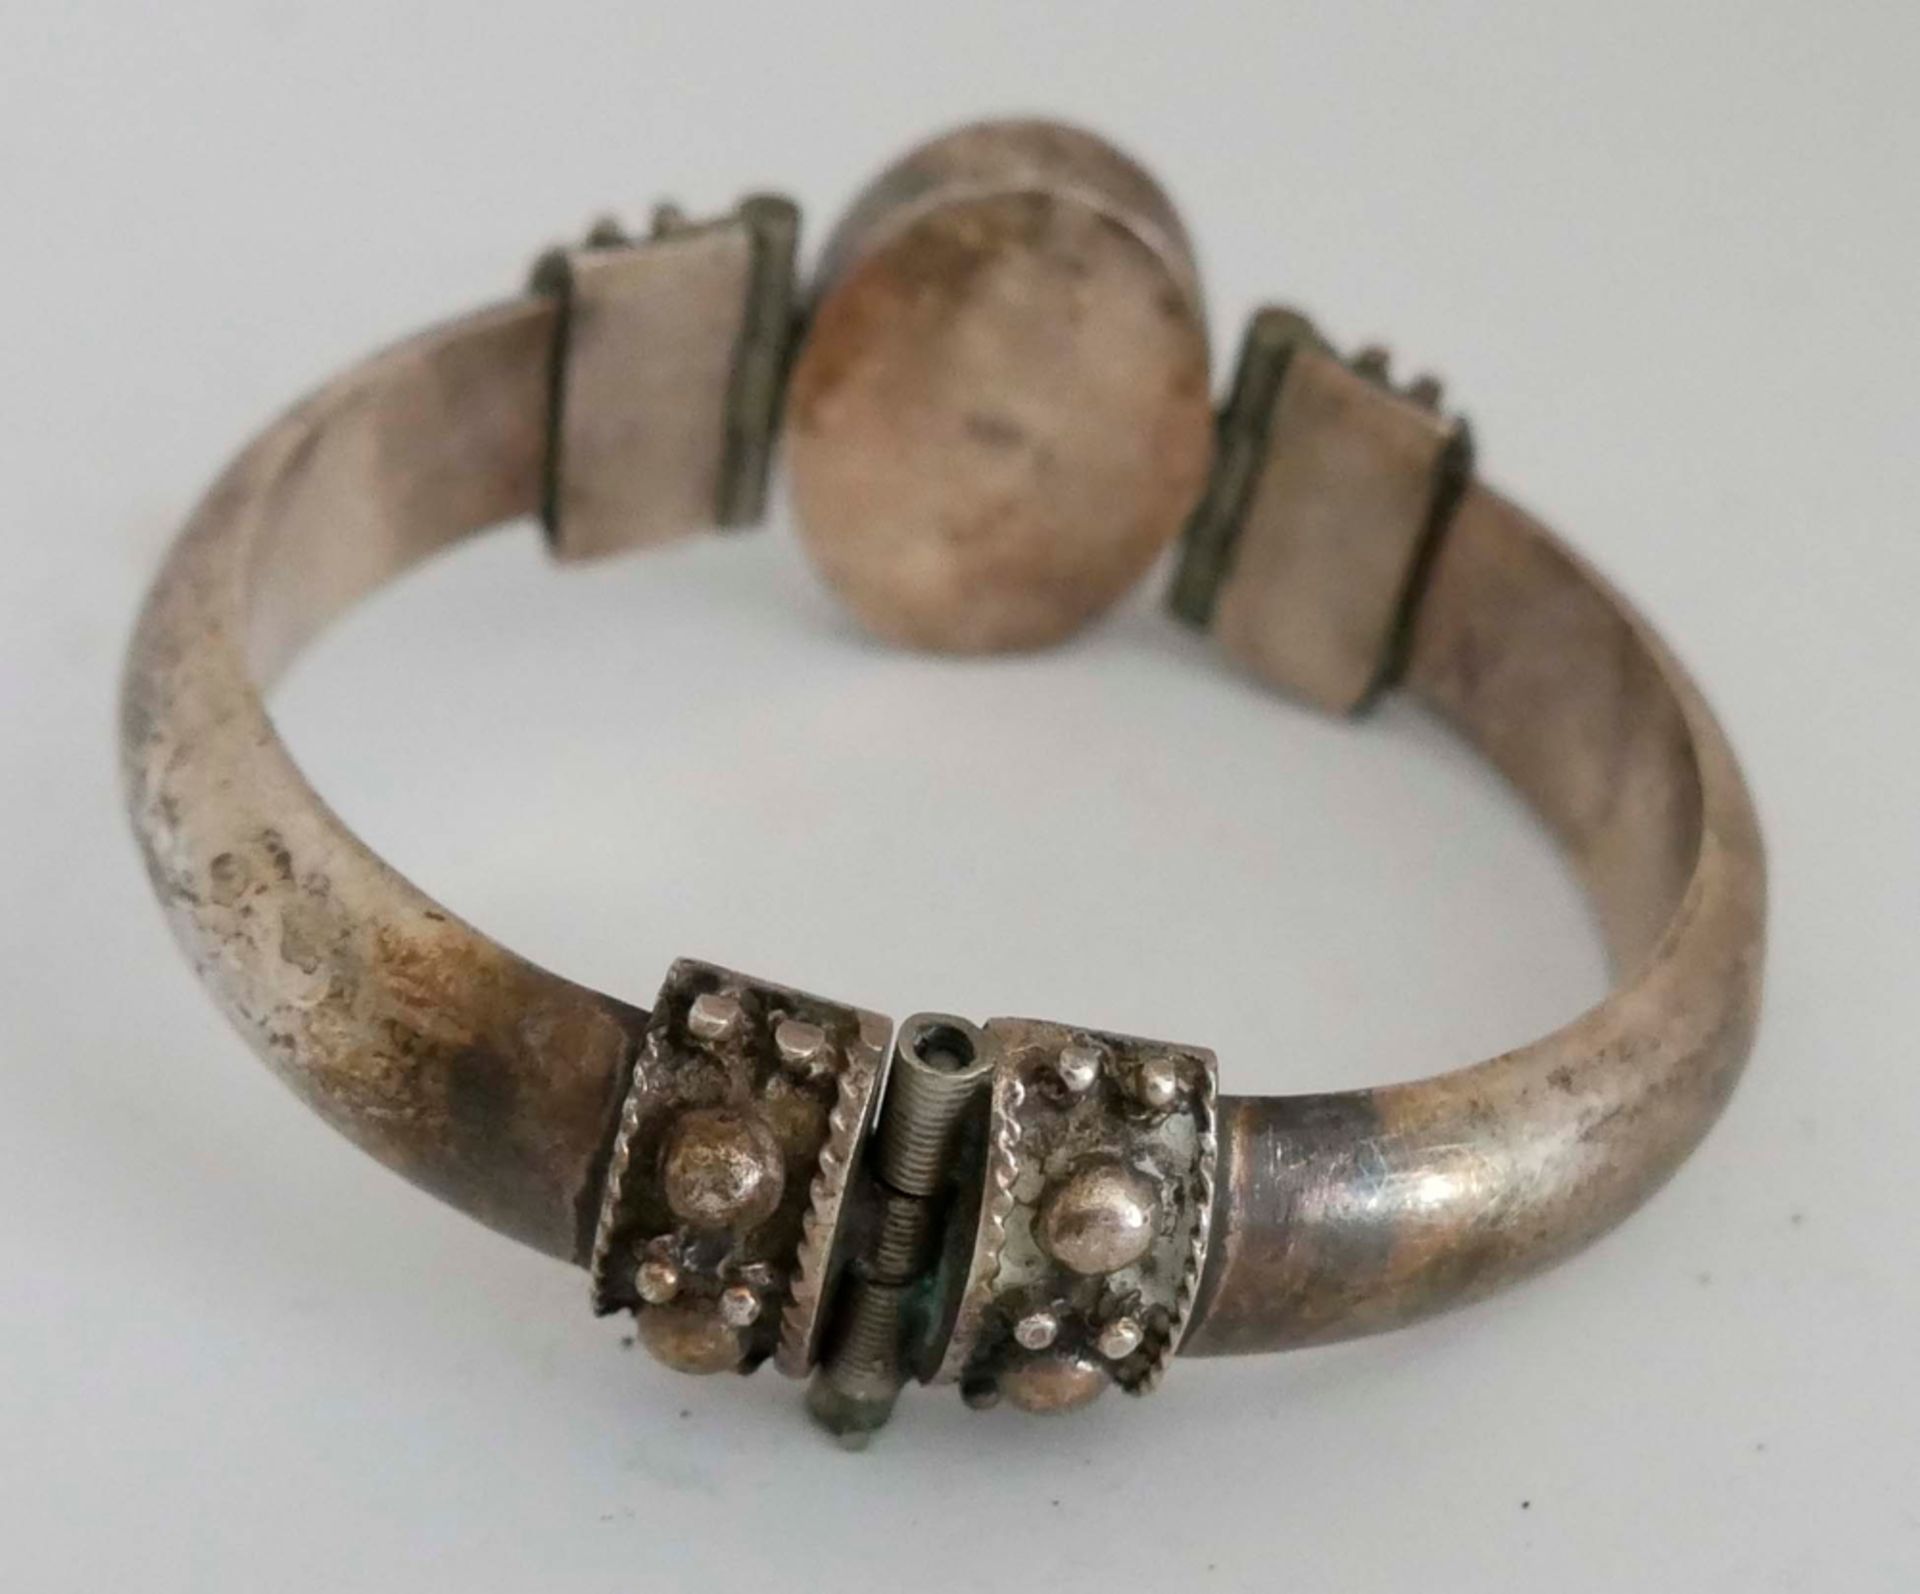 Armspange, 925er Silber mit einem Onix besetzt, wohl Orient. Durchmesser ca. 7 cm - Bild 2 aus 2